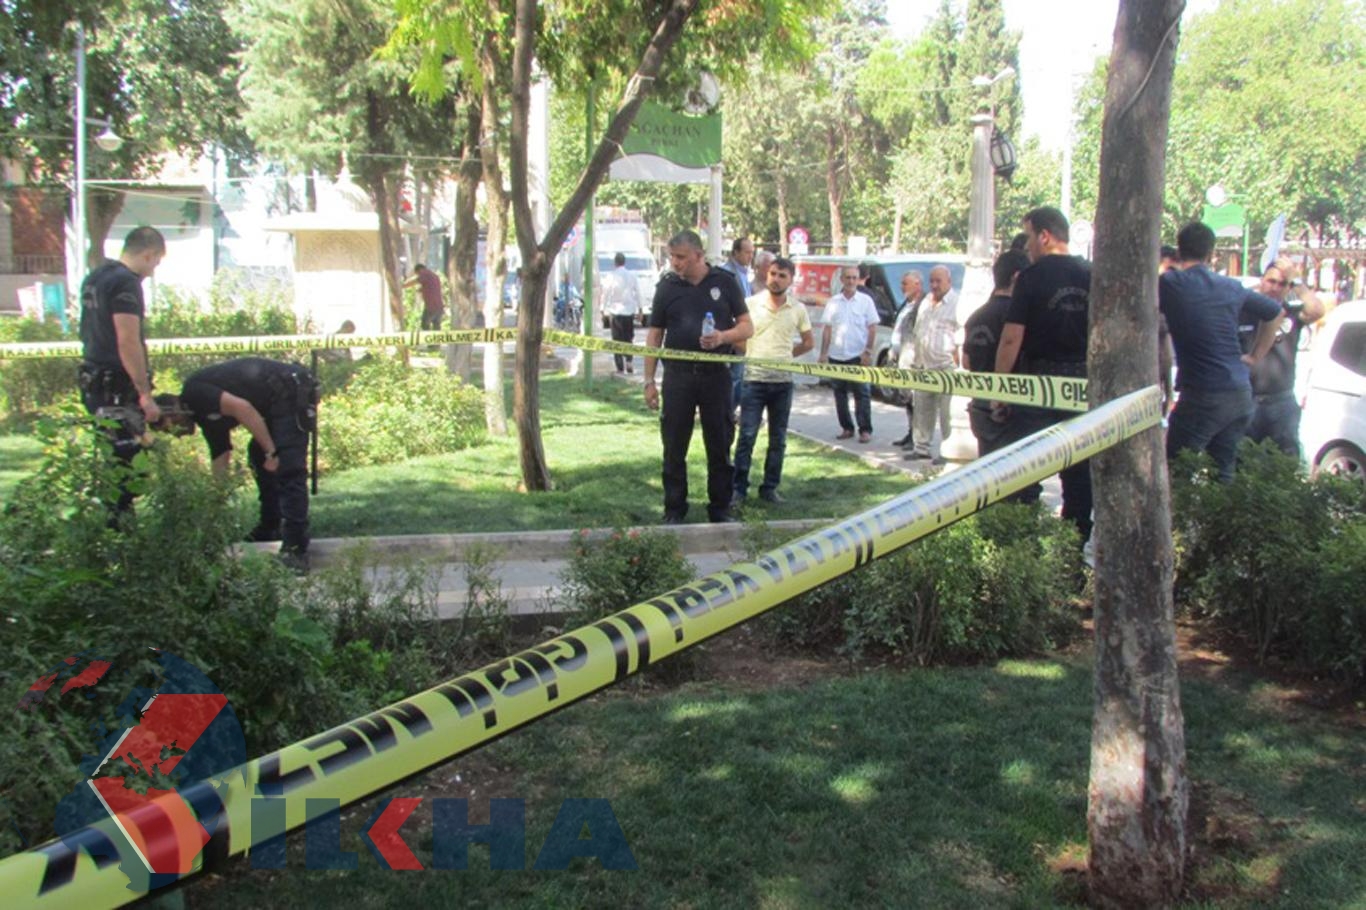 Urfa Siverekte silahlı saldırı: 1 ağır yaralı